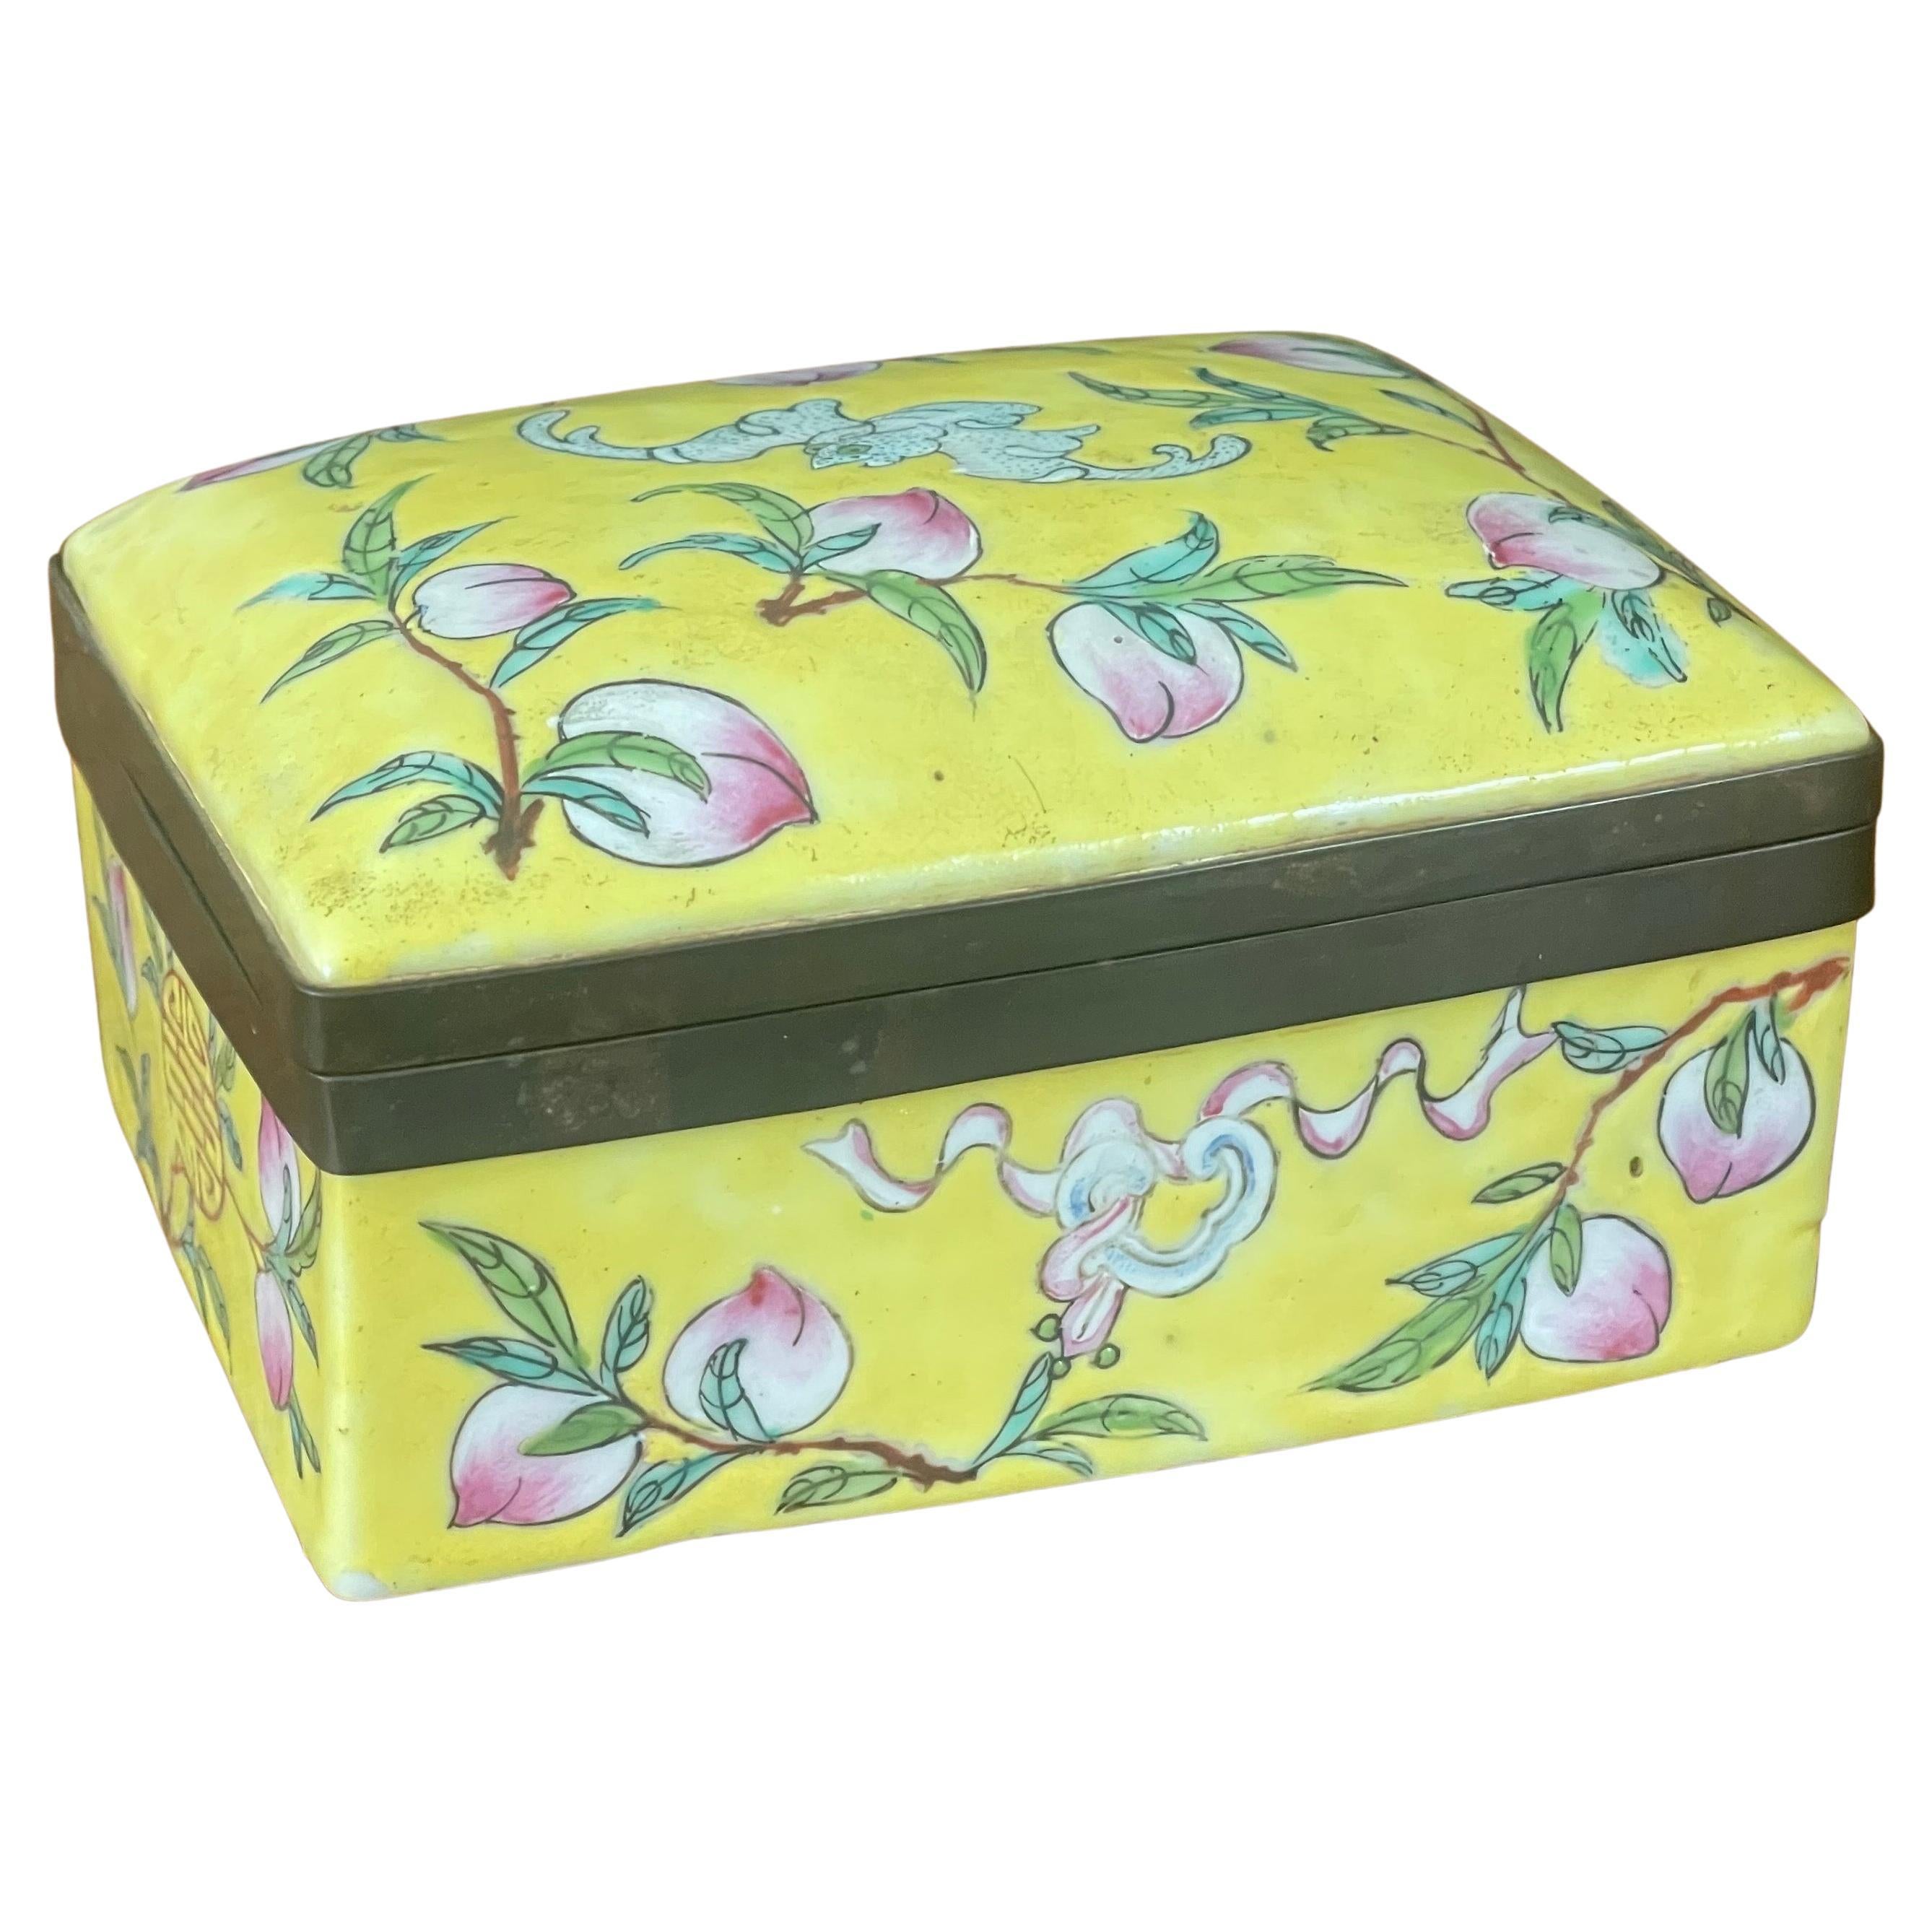 Chinese Hand Painted Ceramic Trinket Box